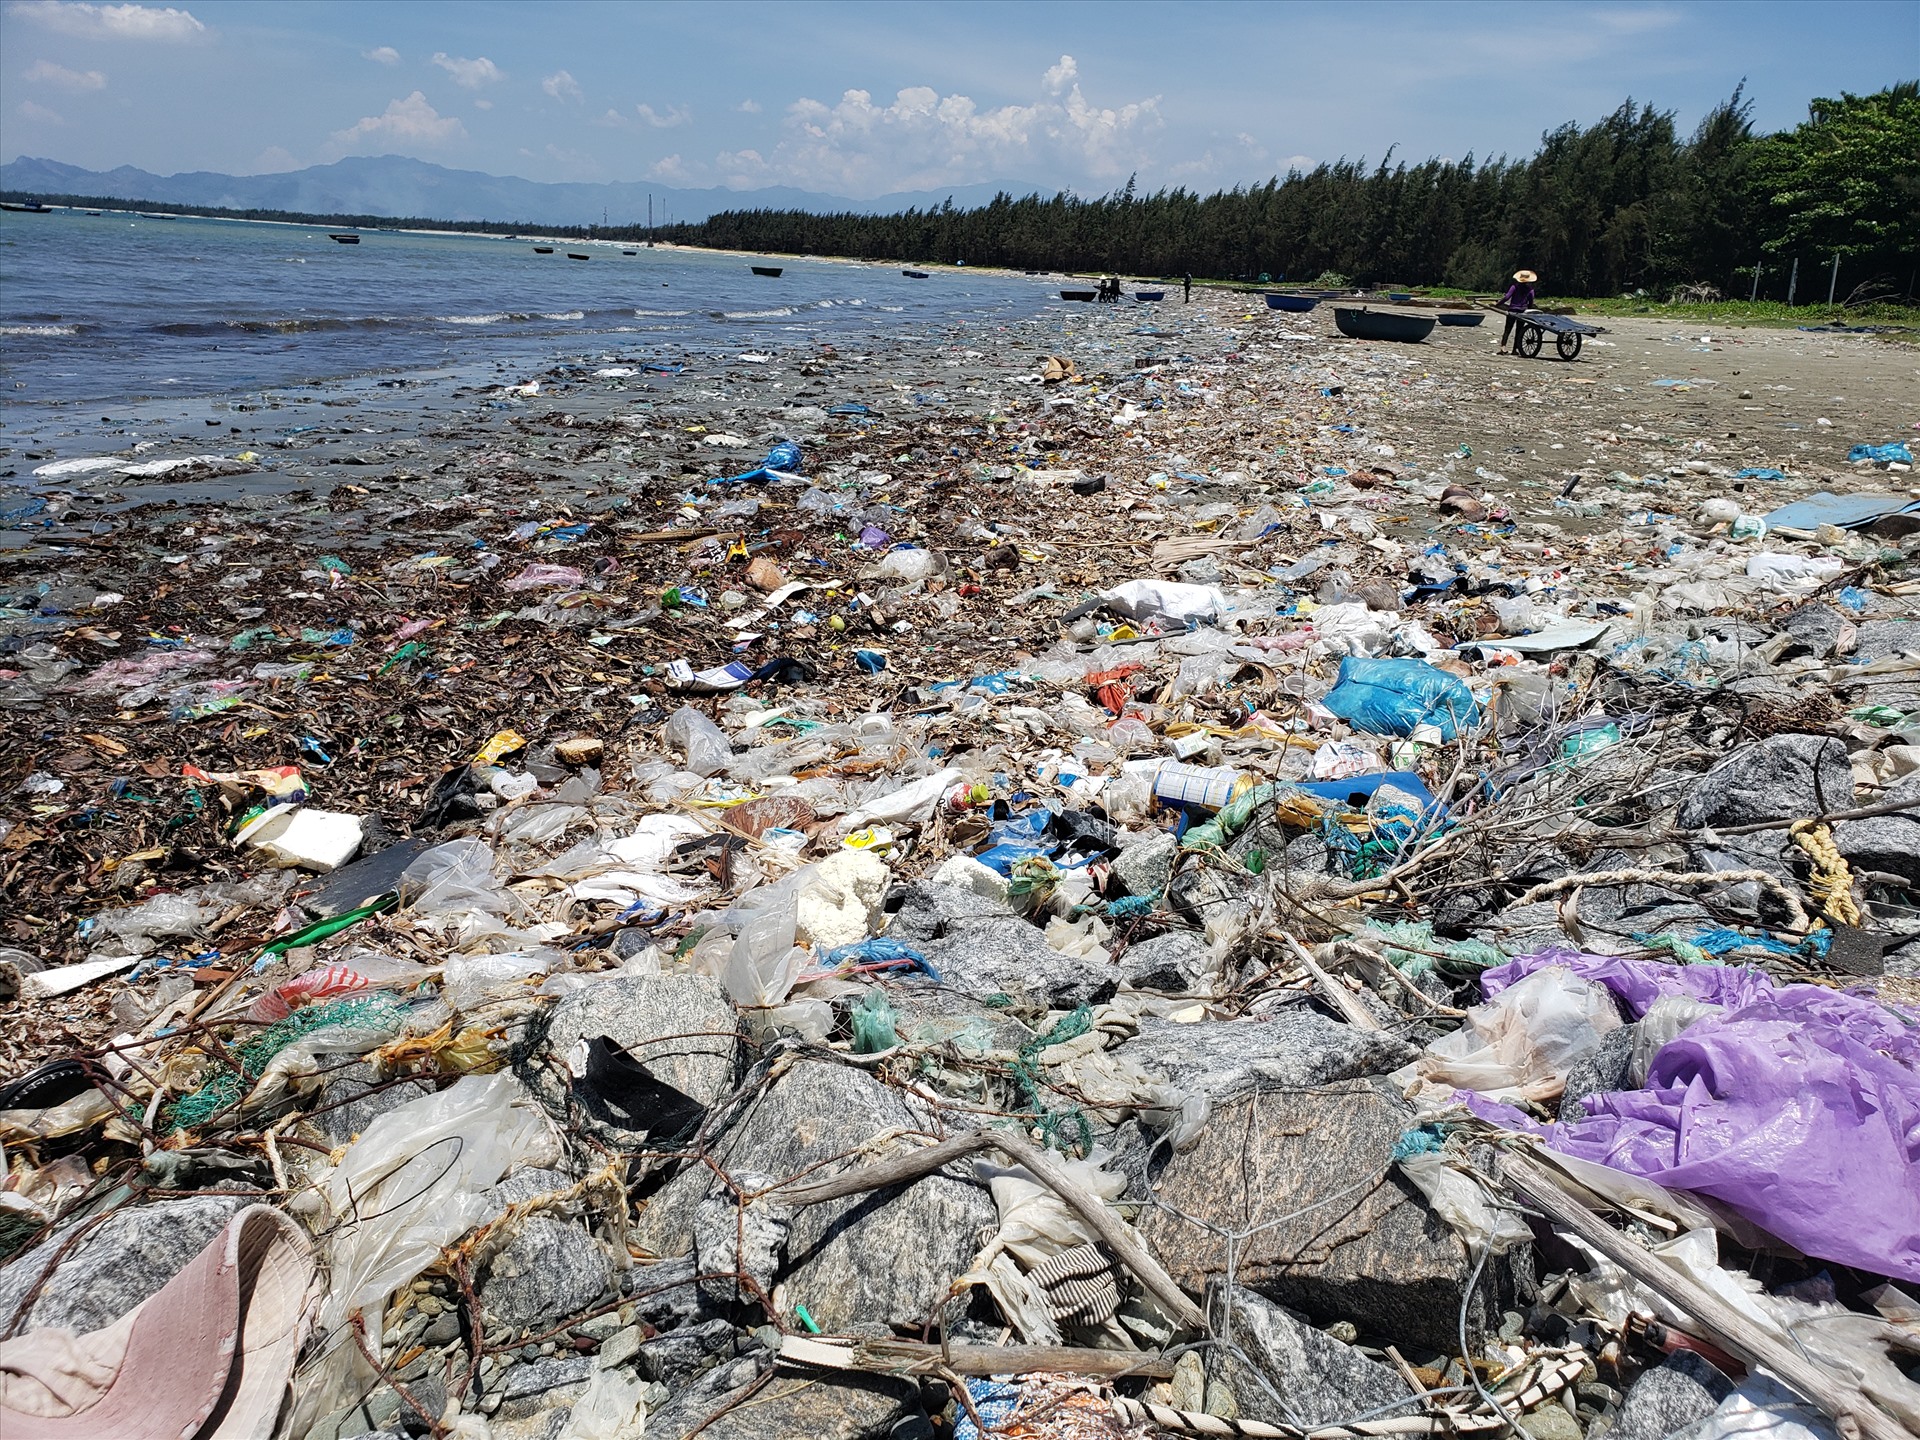 Hơn 1km bờ biển ở xã đảo Tam Hải ngập tràn rác thải như túi ni lông, và những vật dụng gia đình.